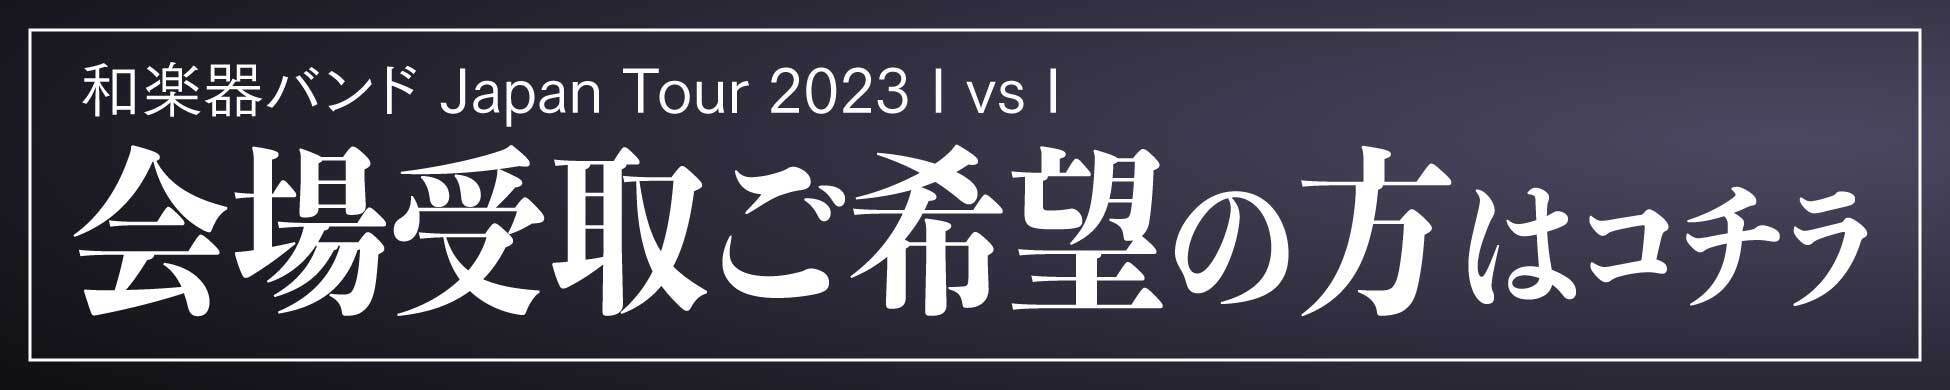 和楽器バンド Japan Tour 2023 I vs I 会場受け取り